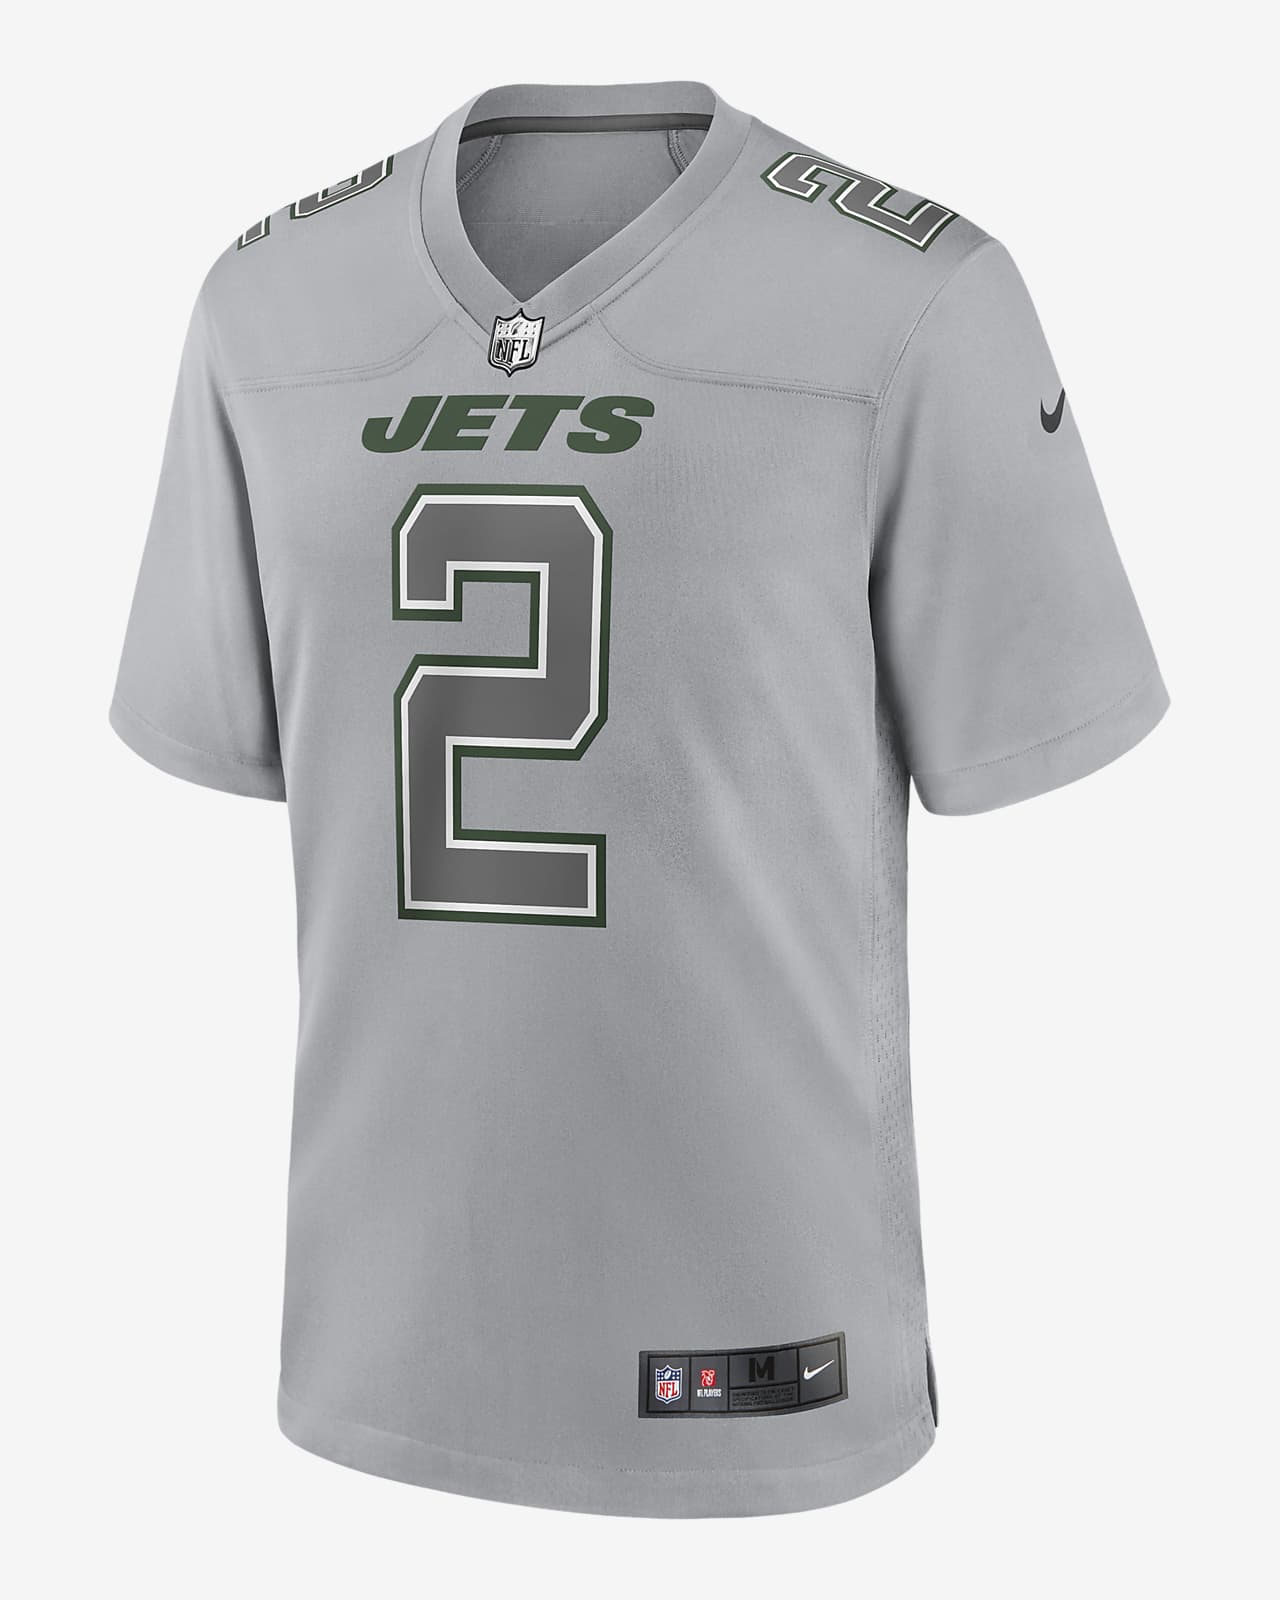 monstruo Tigre Medicinal Jersey de fútbol americano a la moda para hombre New York Jets Atmosphere  de la NFL (Zach Wilson). Nike.com